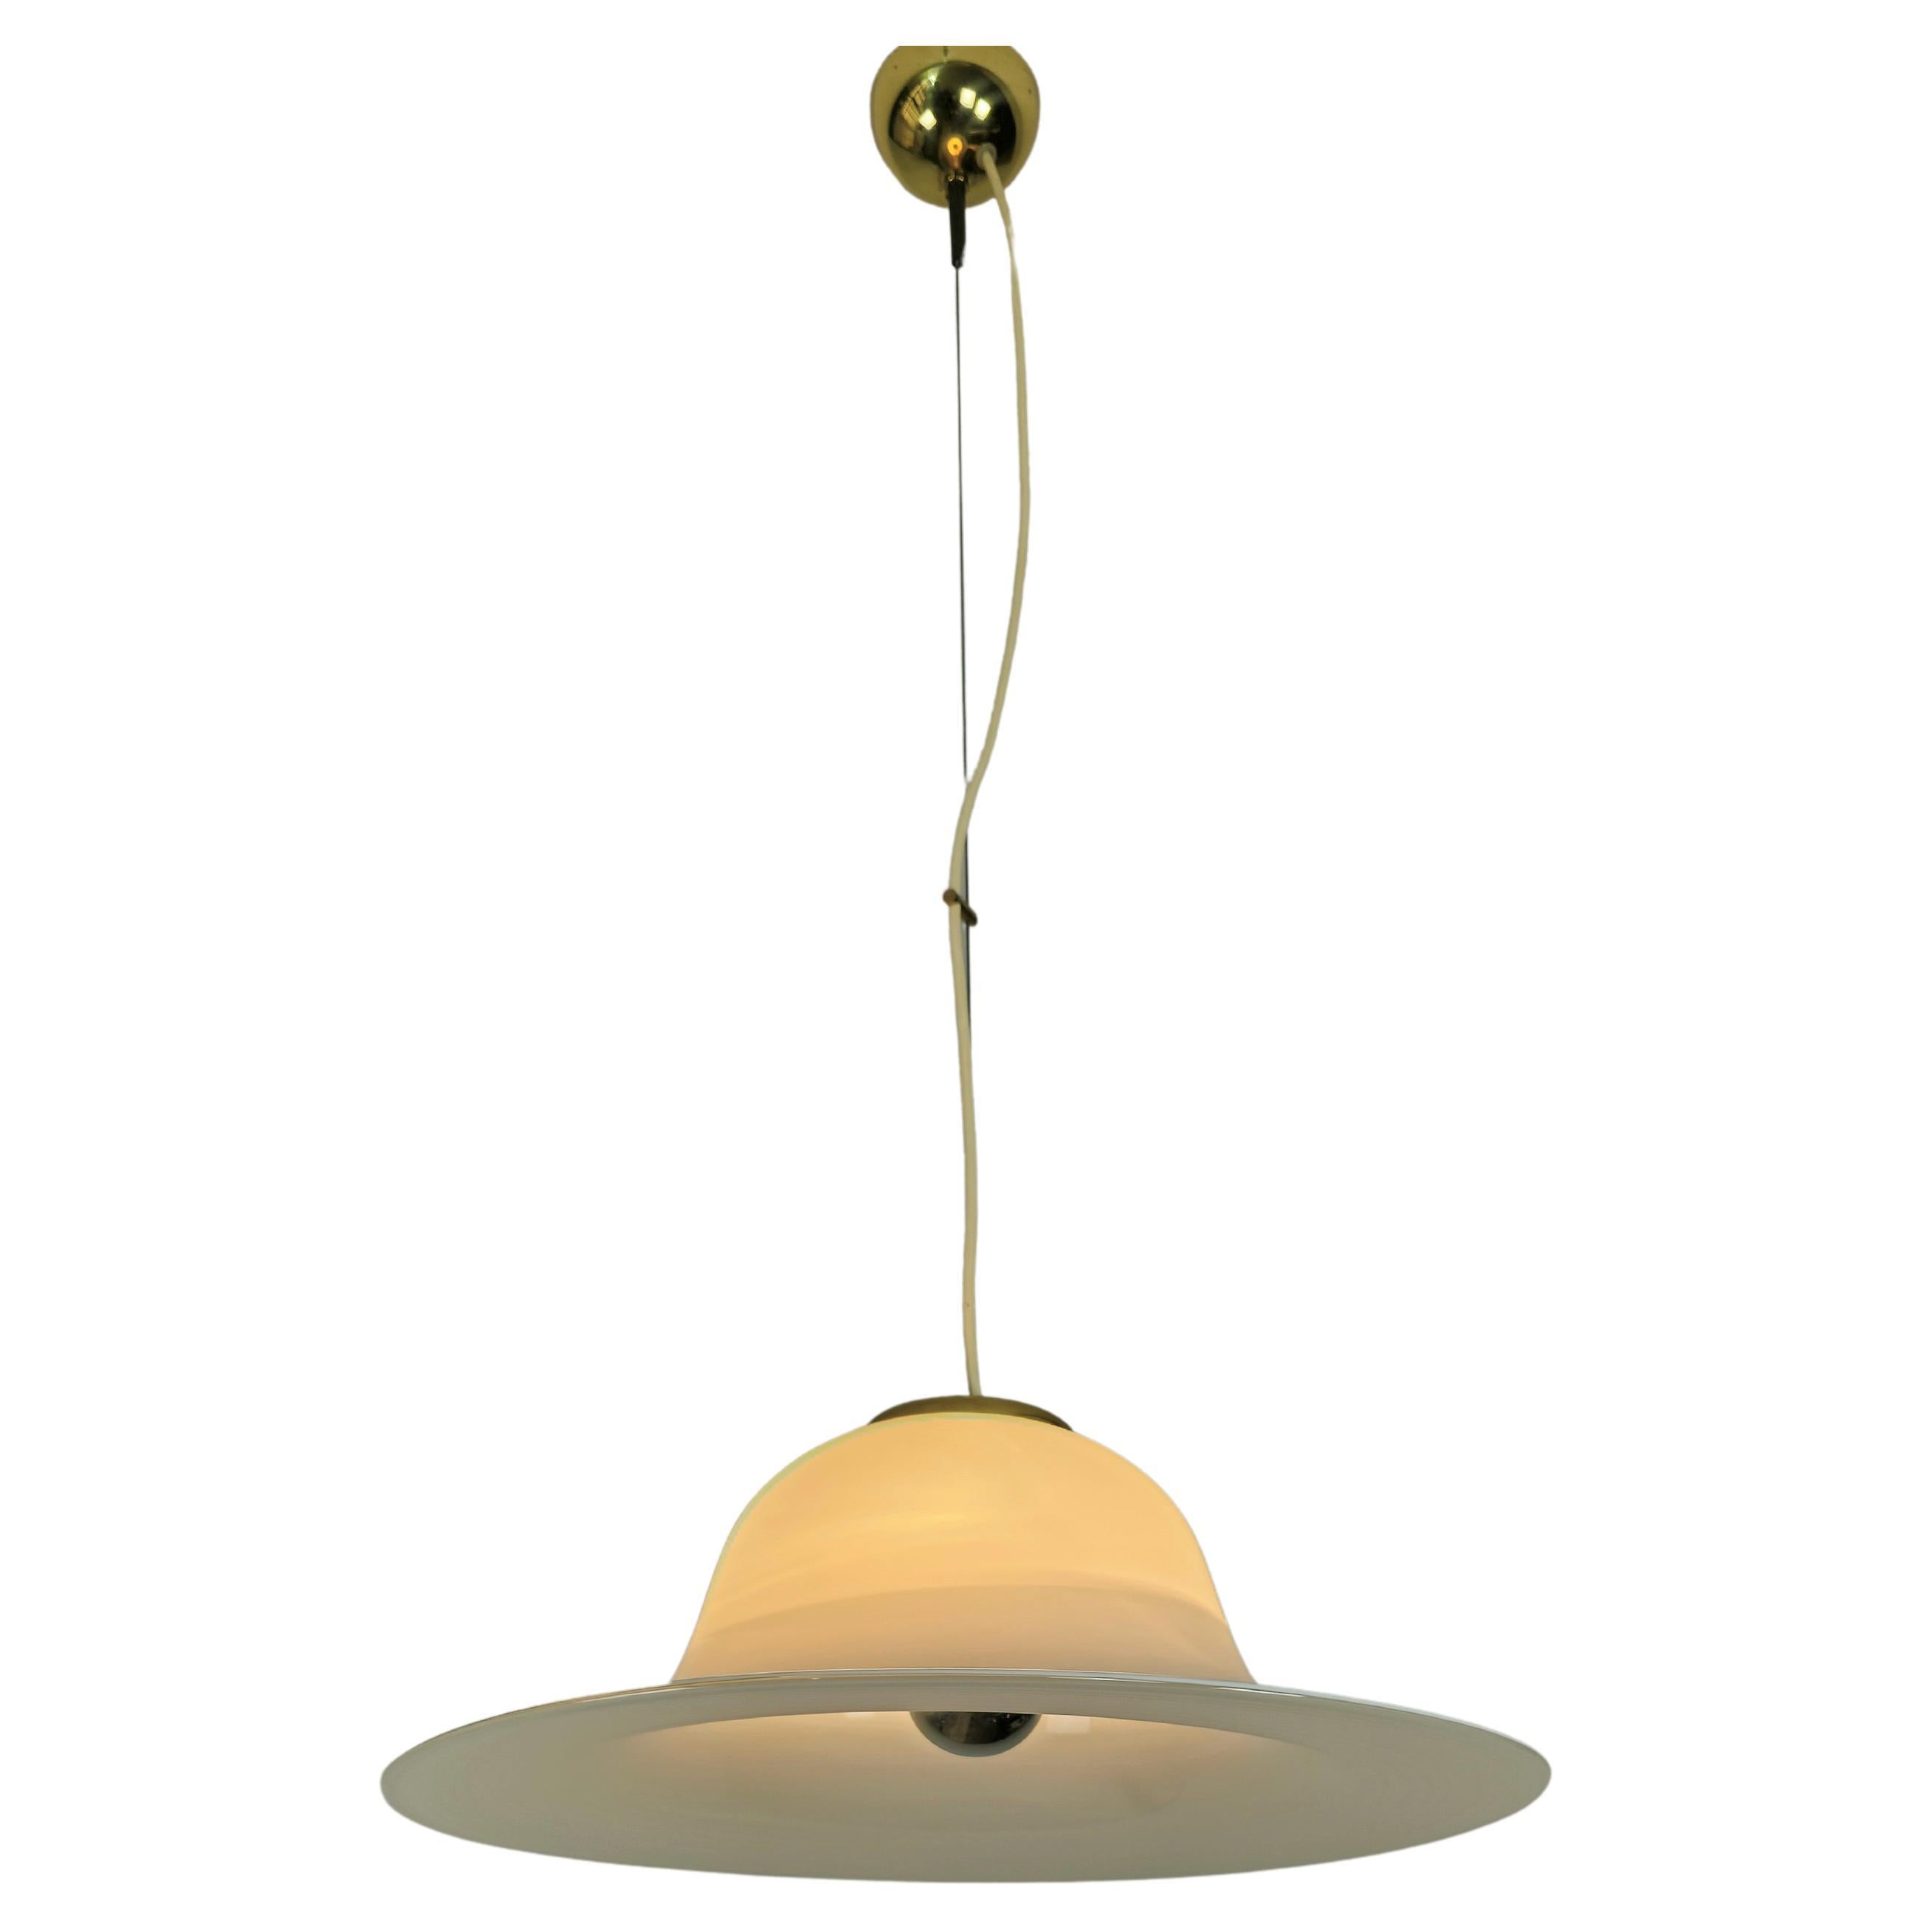 Lampe pendante avec 1 lumière E27 produite à Murano dans les années 70. La lampe suspendue a été fabriquée en verre blanc de Murano avec des accessoires en aluminium doré. La suspension s'adapte à tout type de mobilier, du vintage au